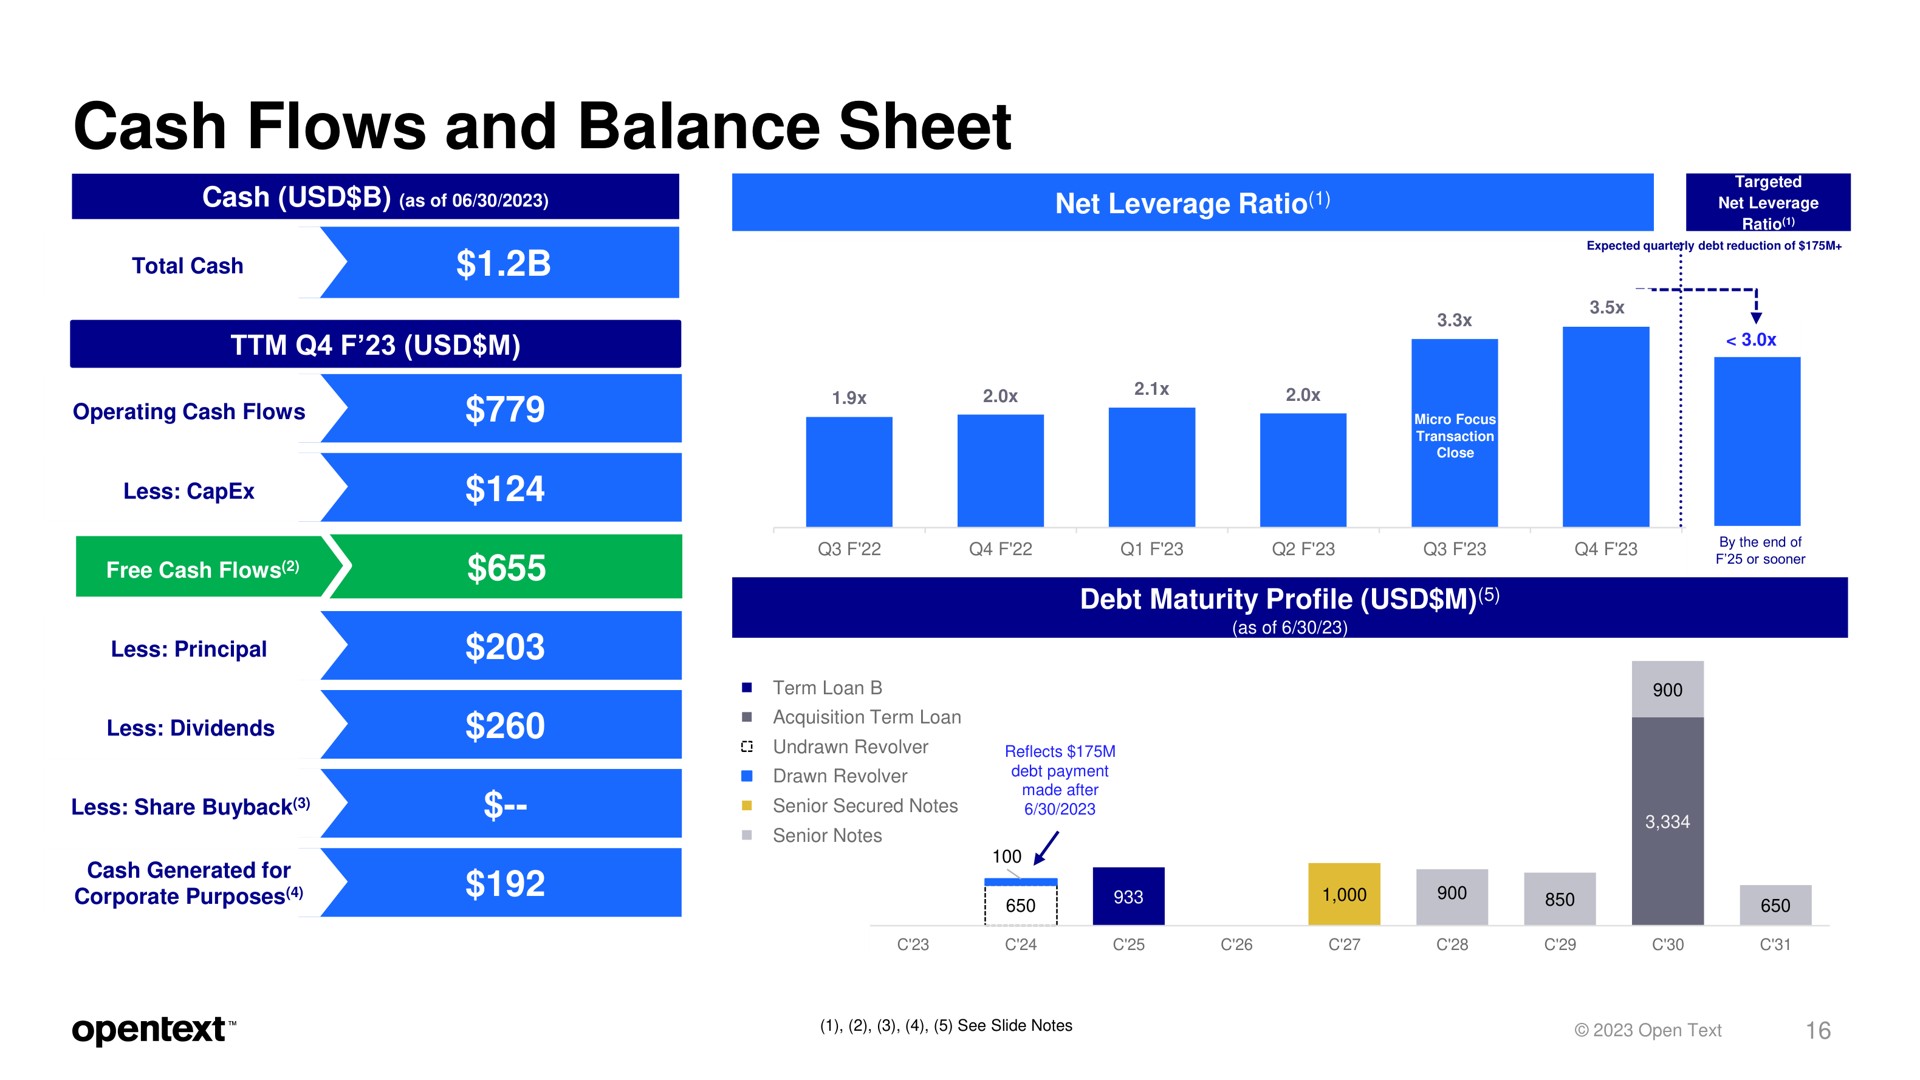 cash flows and balance sheet core | OpenText